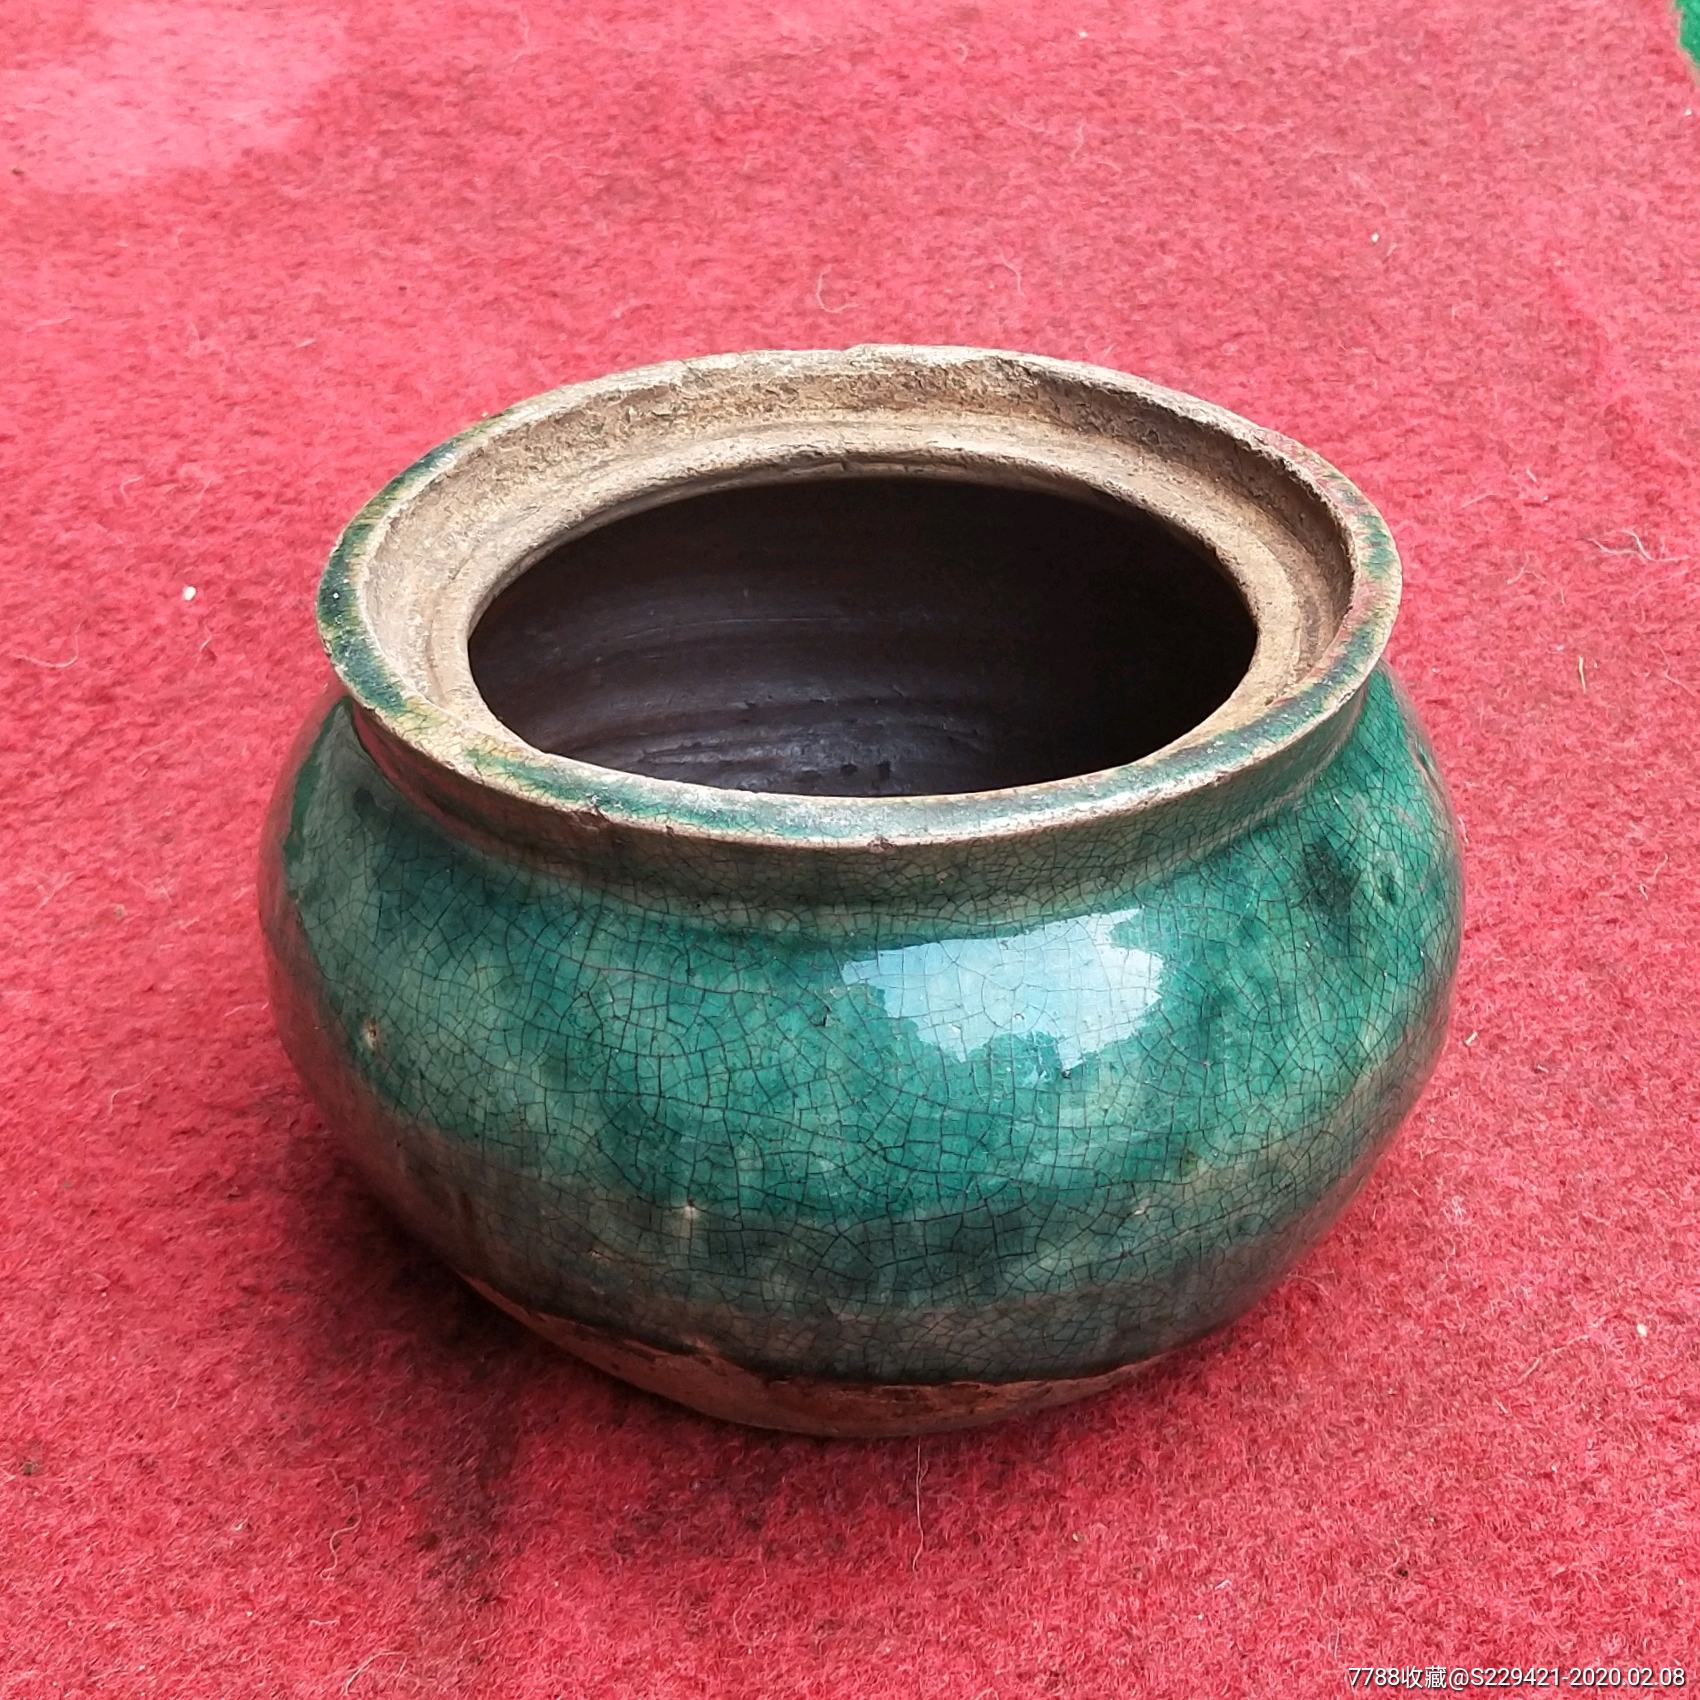 铜官窑绿釉罐图片